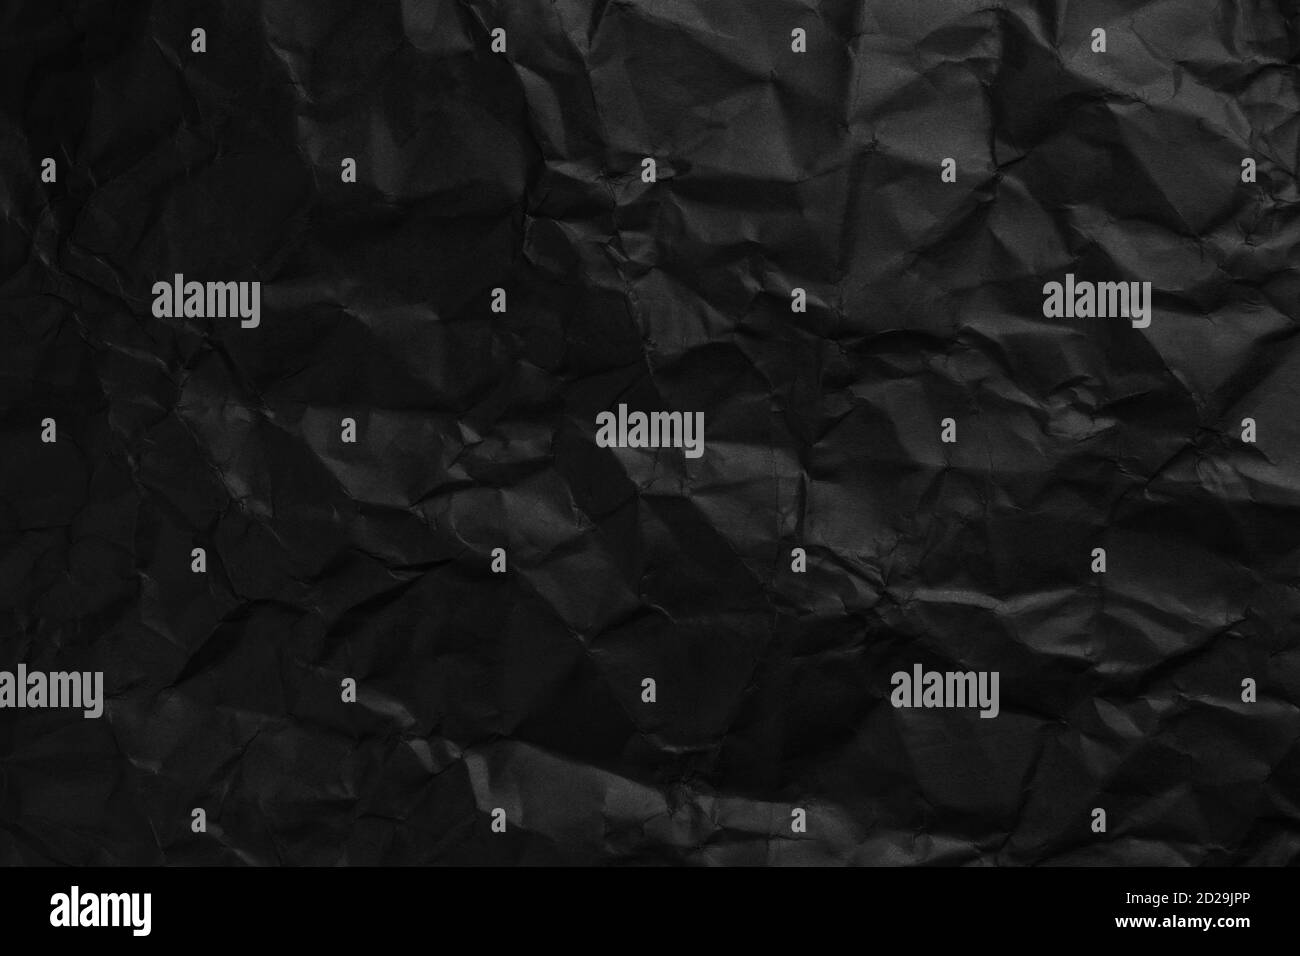 Schwarze Hintergrundstruktur von zerknittertem Papier Nahaufnahme.  Verblasste Texturfalten Stockfotografie - Alamy